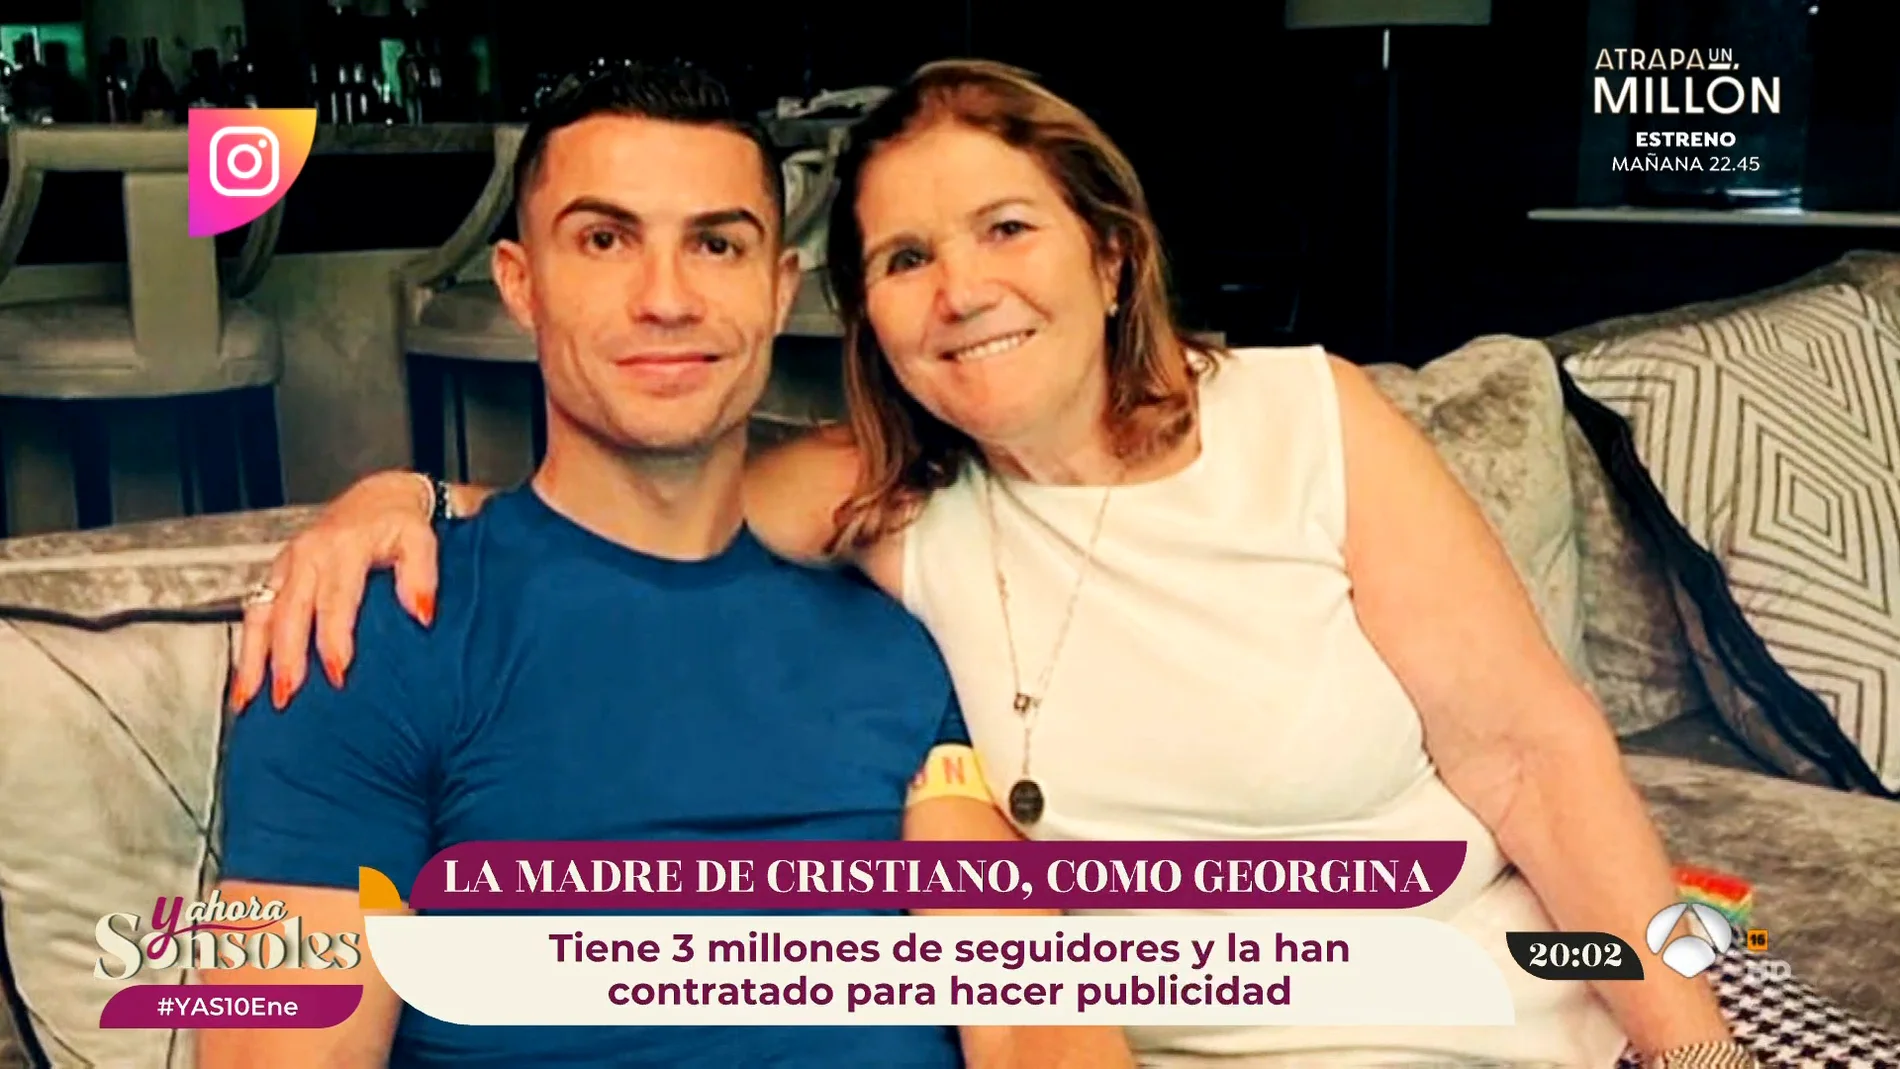 La madre de Cristiano Ronaldo, influencer a los 68 años: ¿Le hará competencia a Georgina?